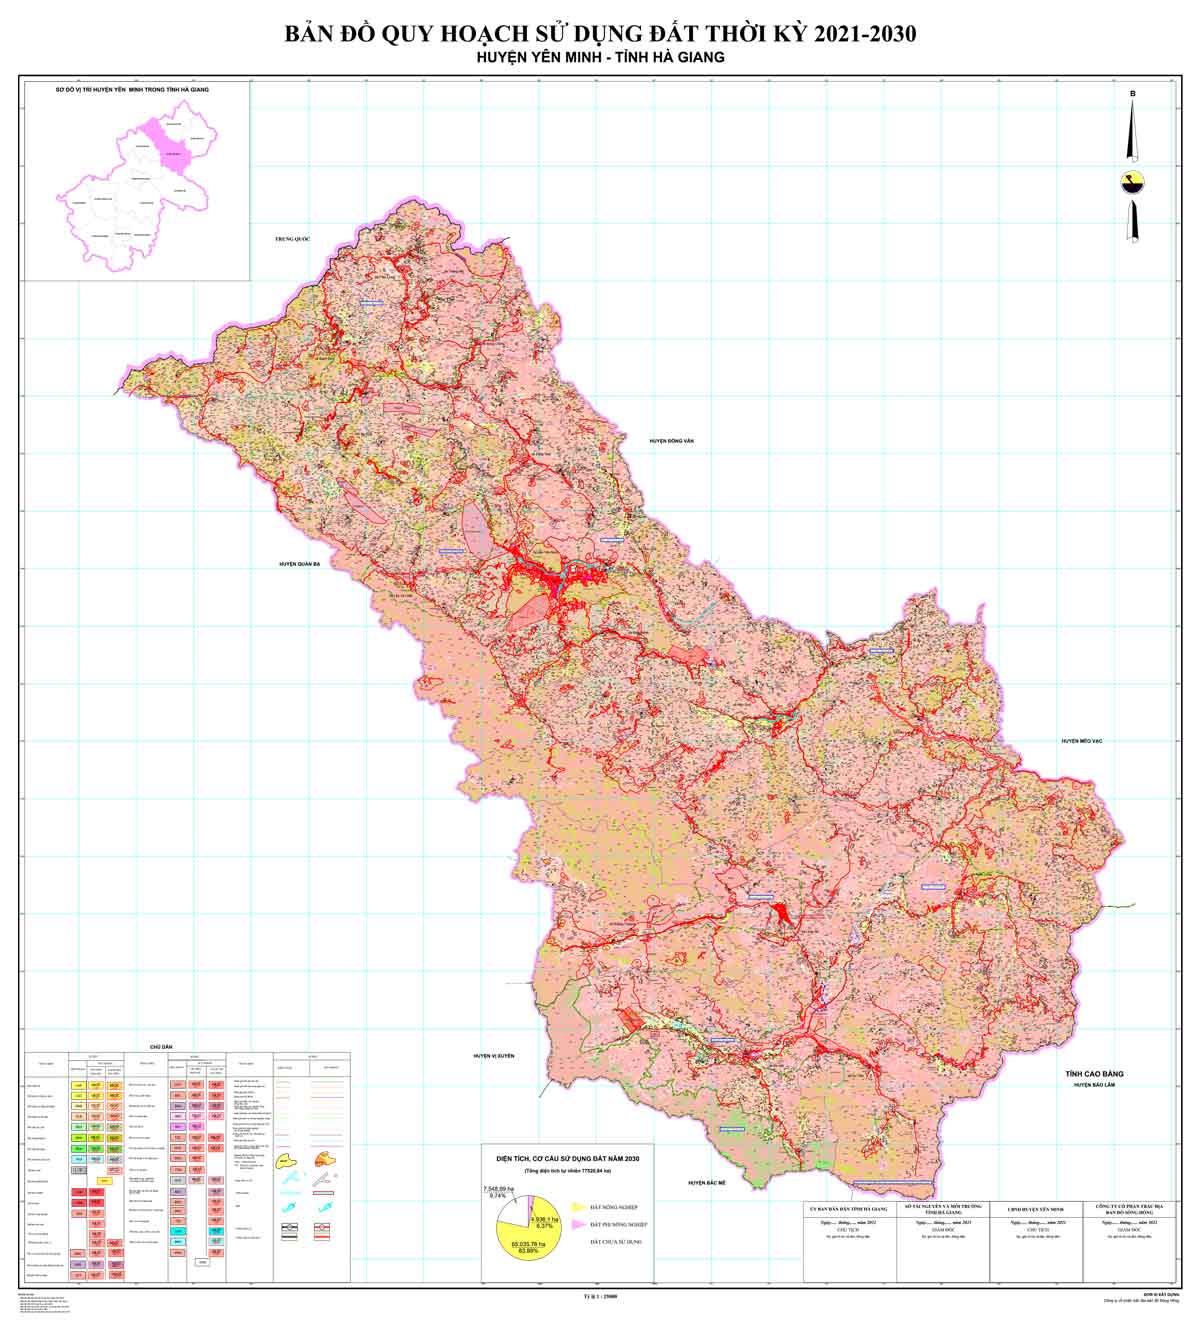 Bản đồ QHSDĐ huyện Yên Minh đến năm 2030